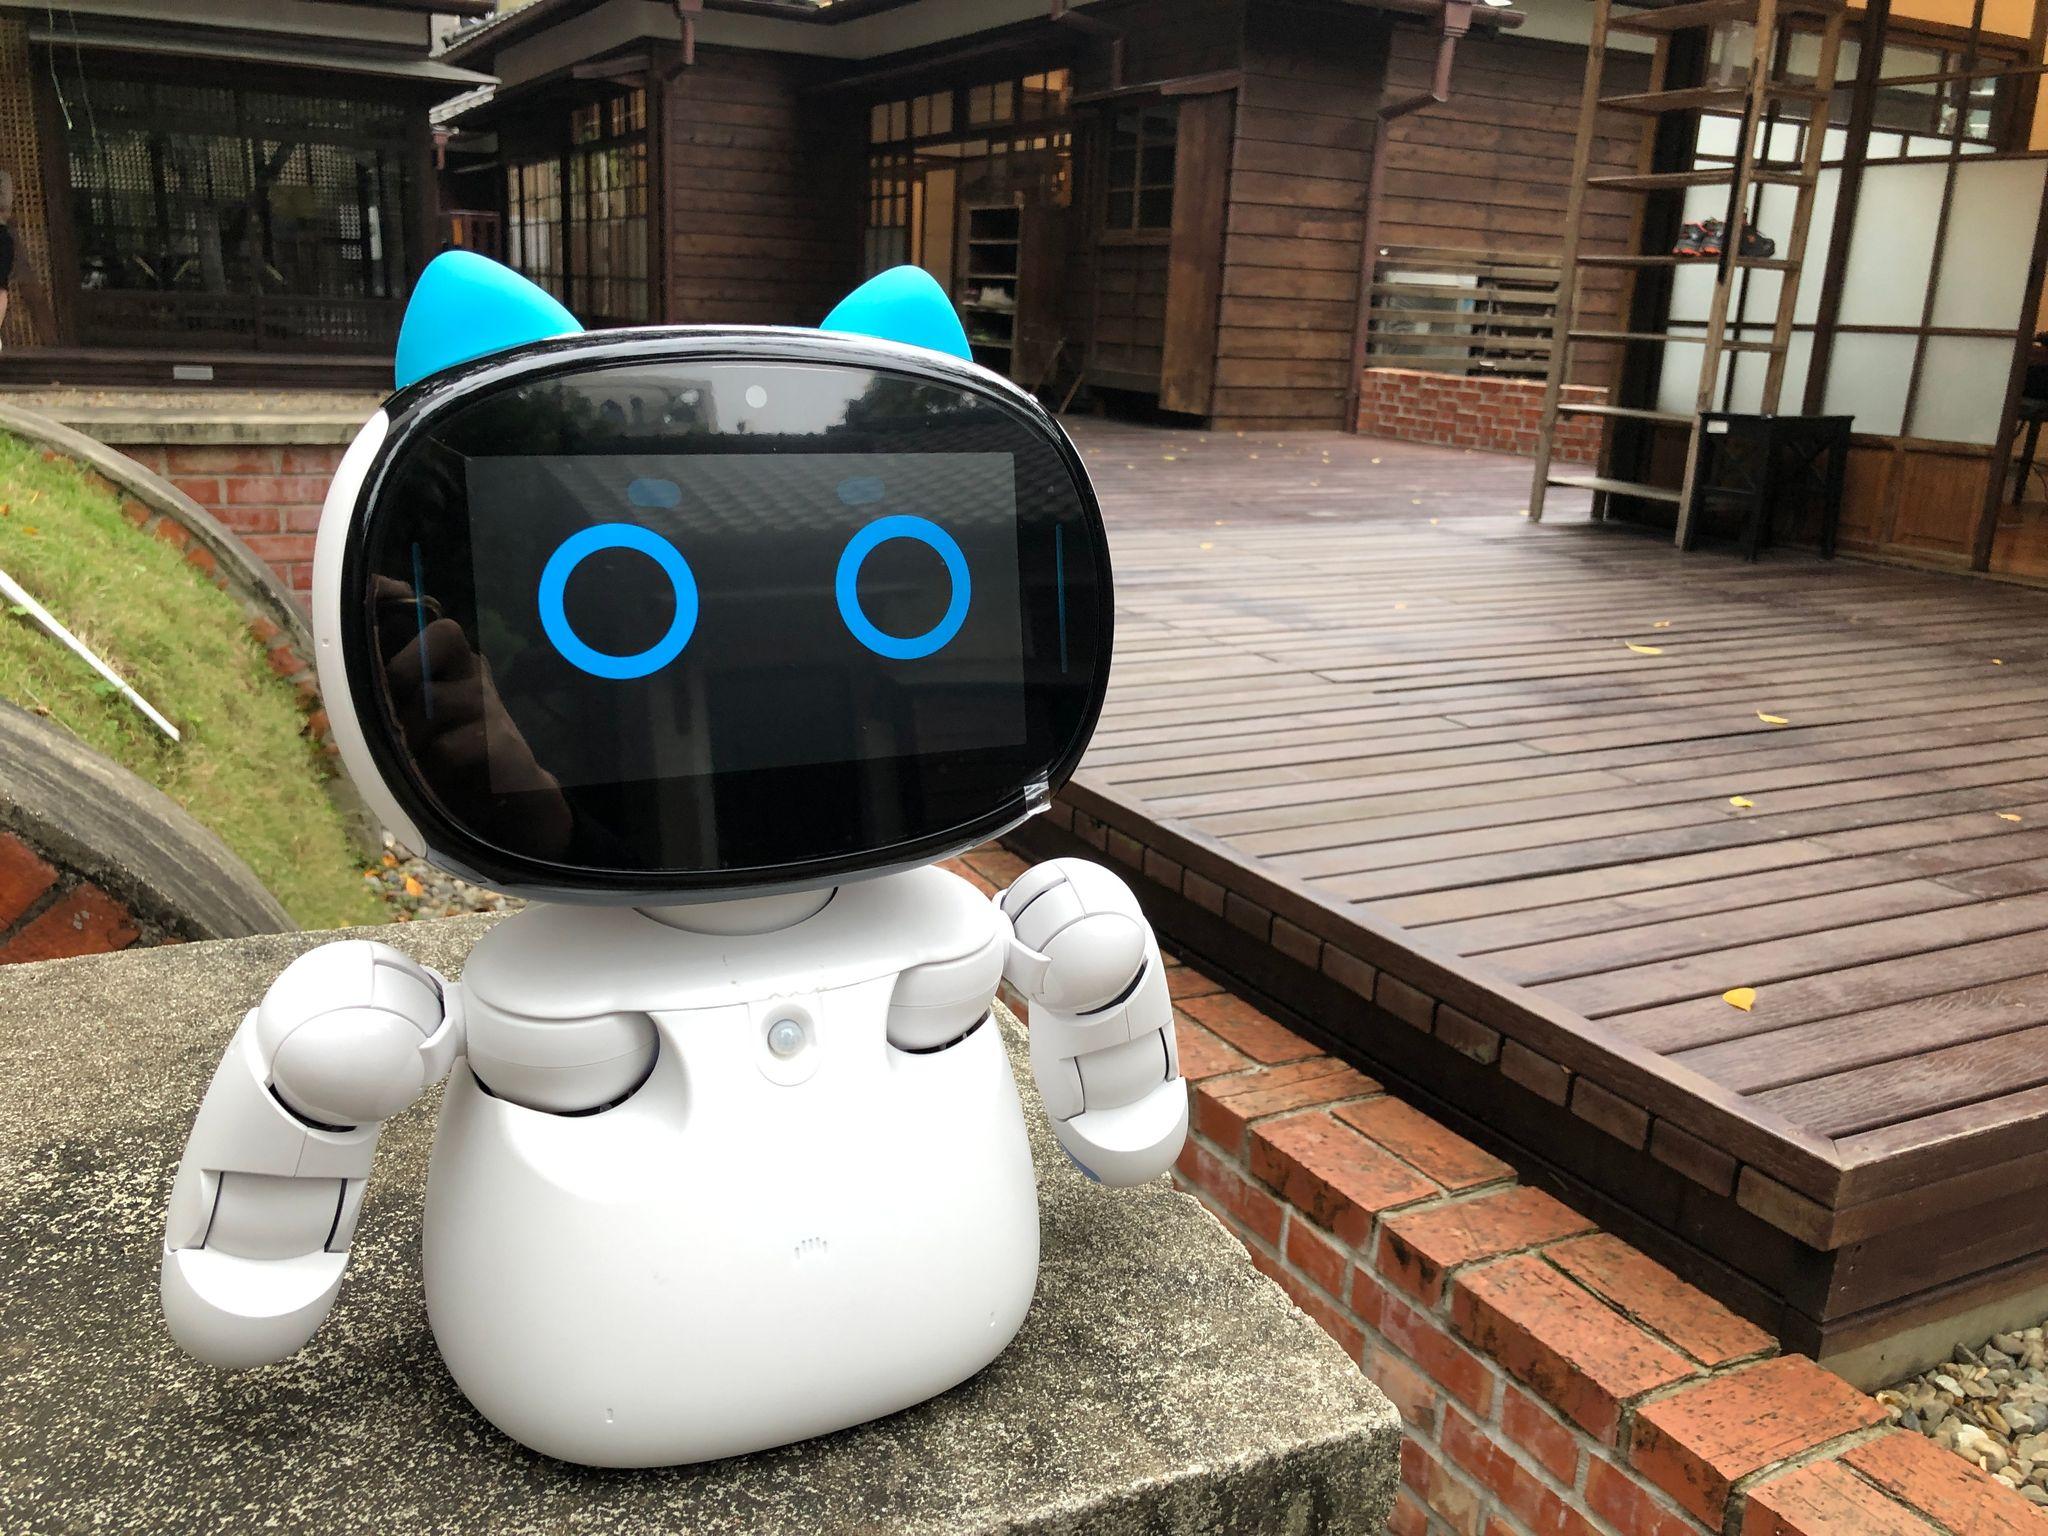 機器人凱比未來將加入「繪本說故事」團隊，歡迎來臺灣文學基地與凱比見面！